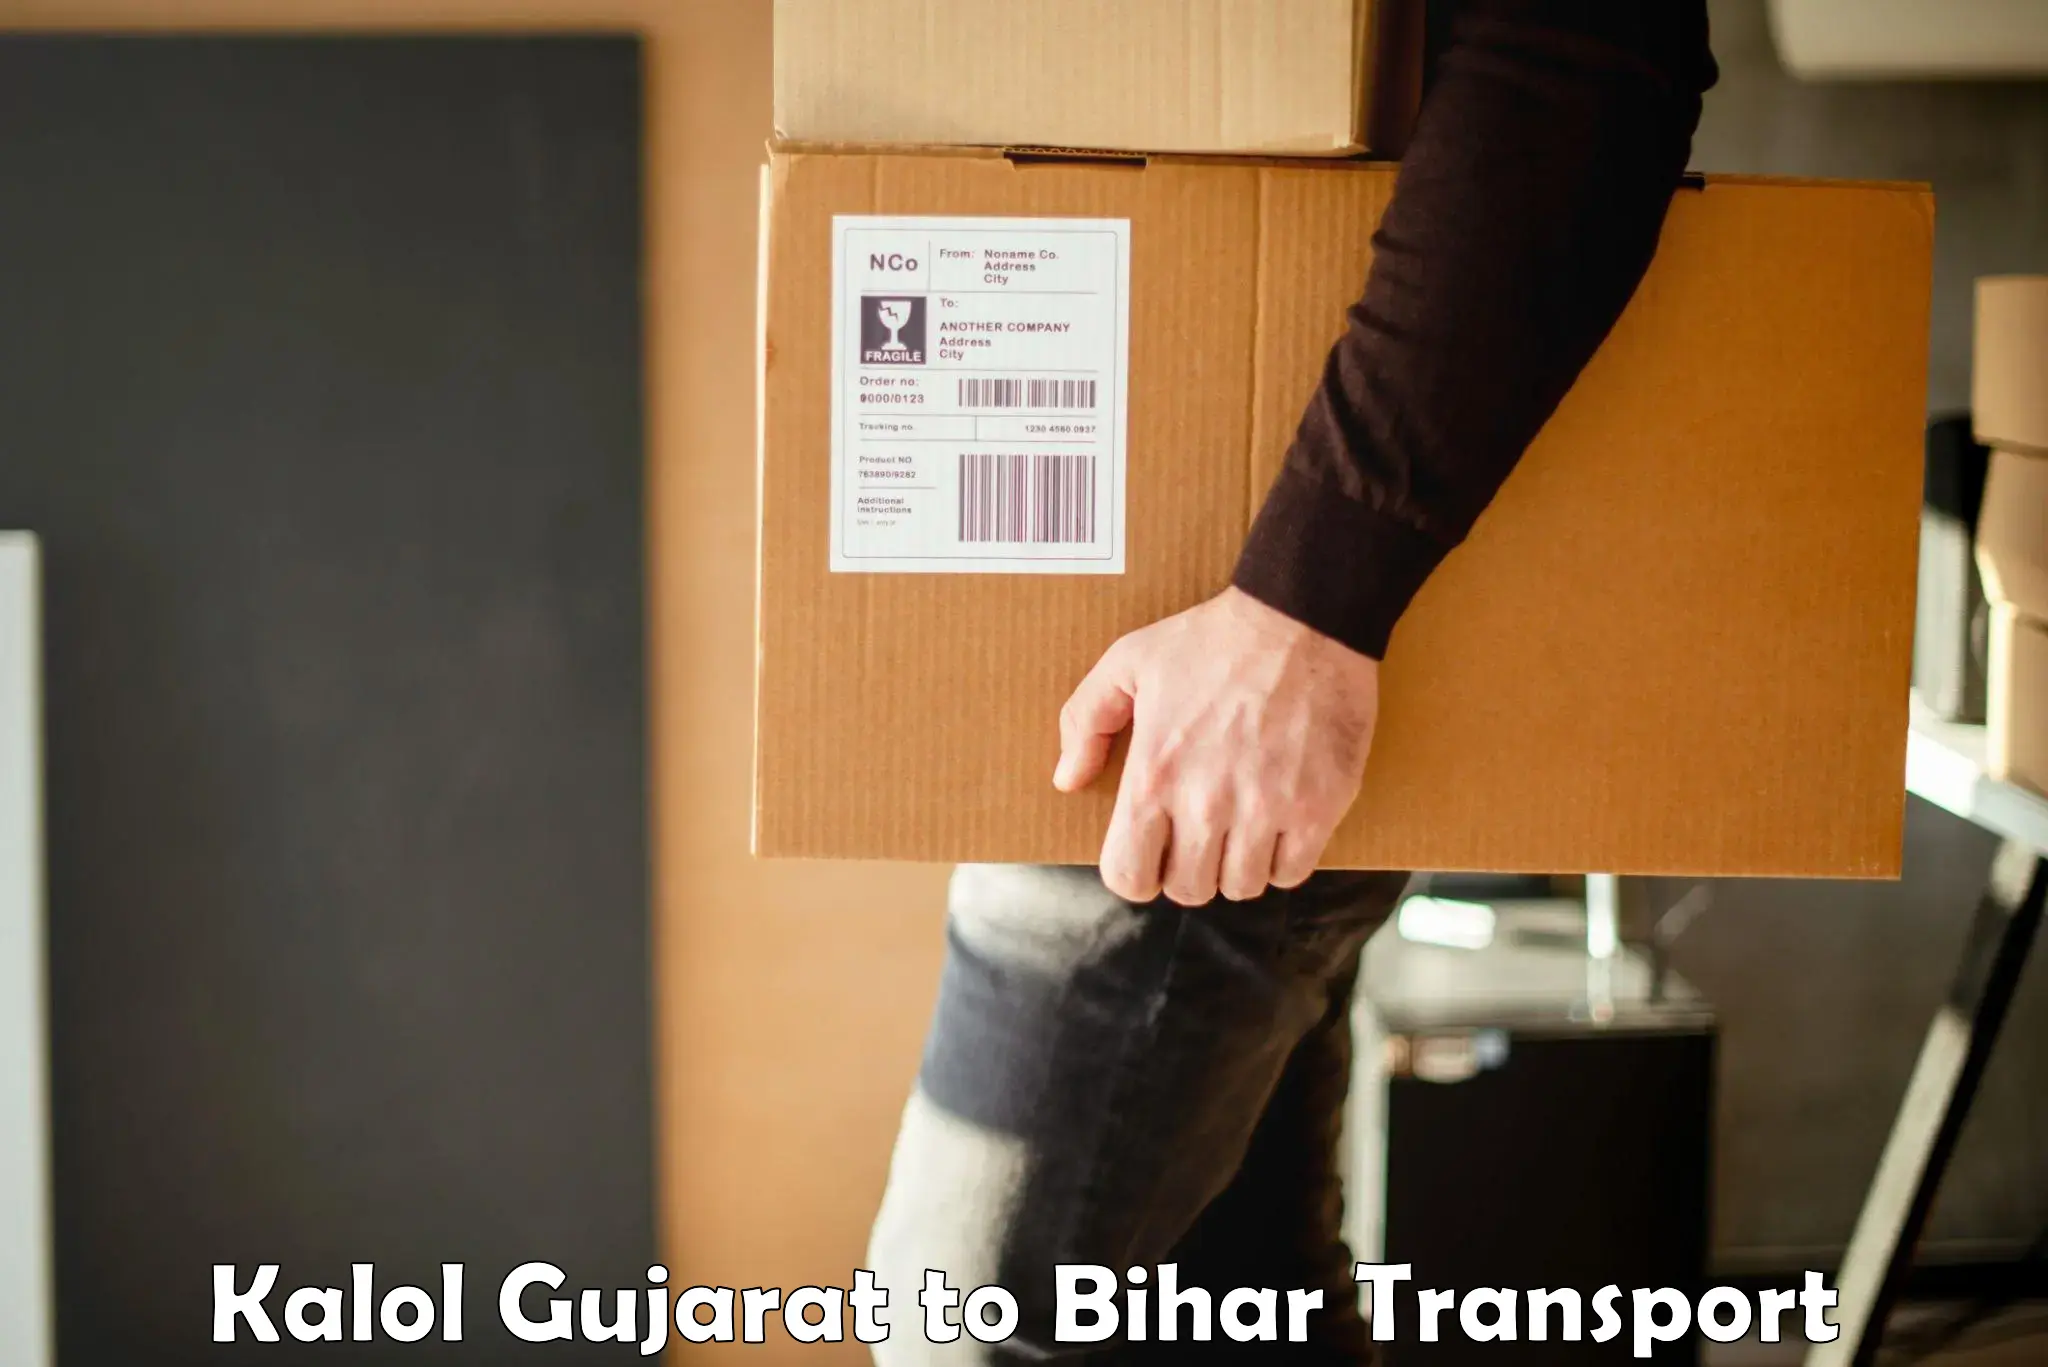 Furniture transport service in Kalol Gujarat to Jagdishpur Bhojpur